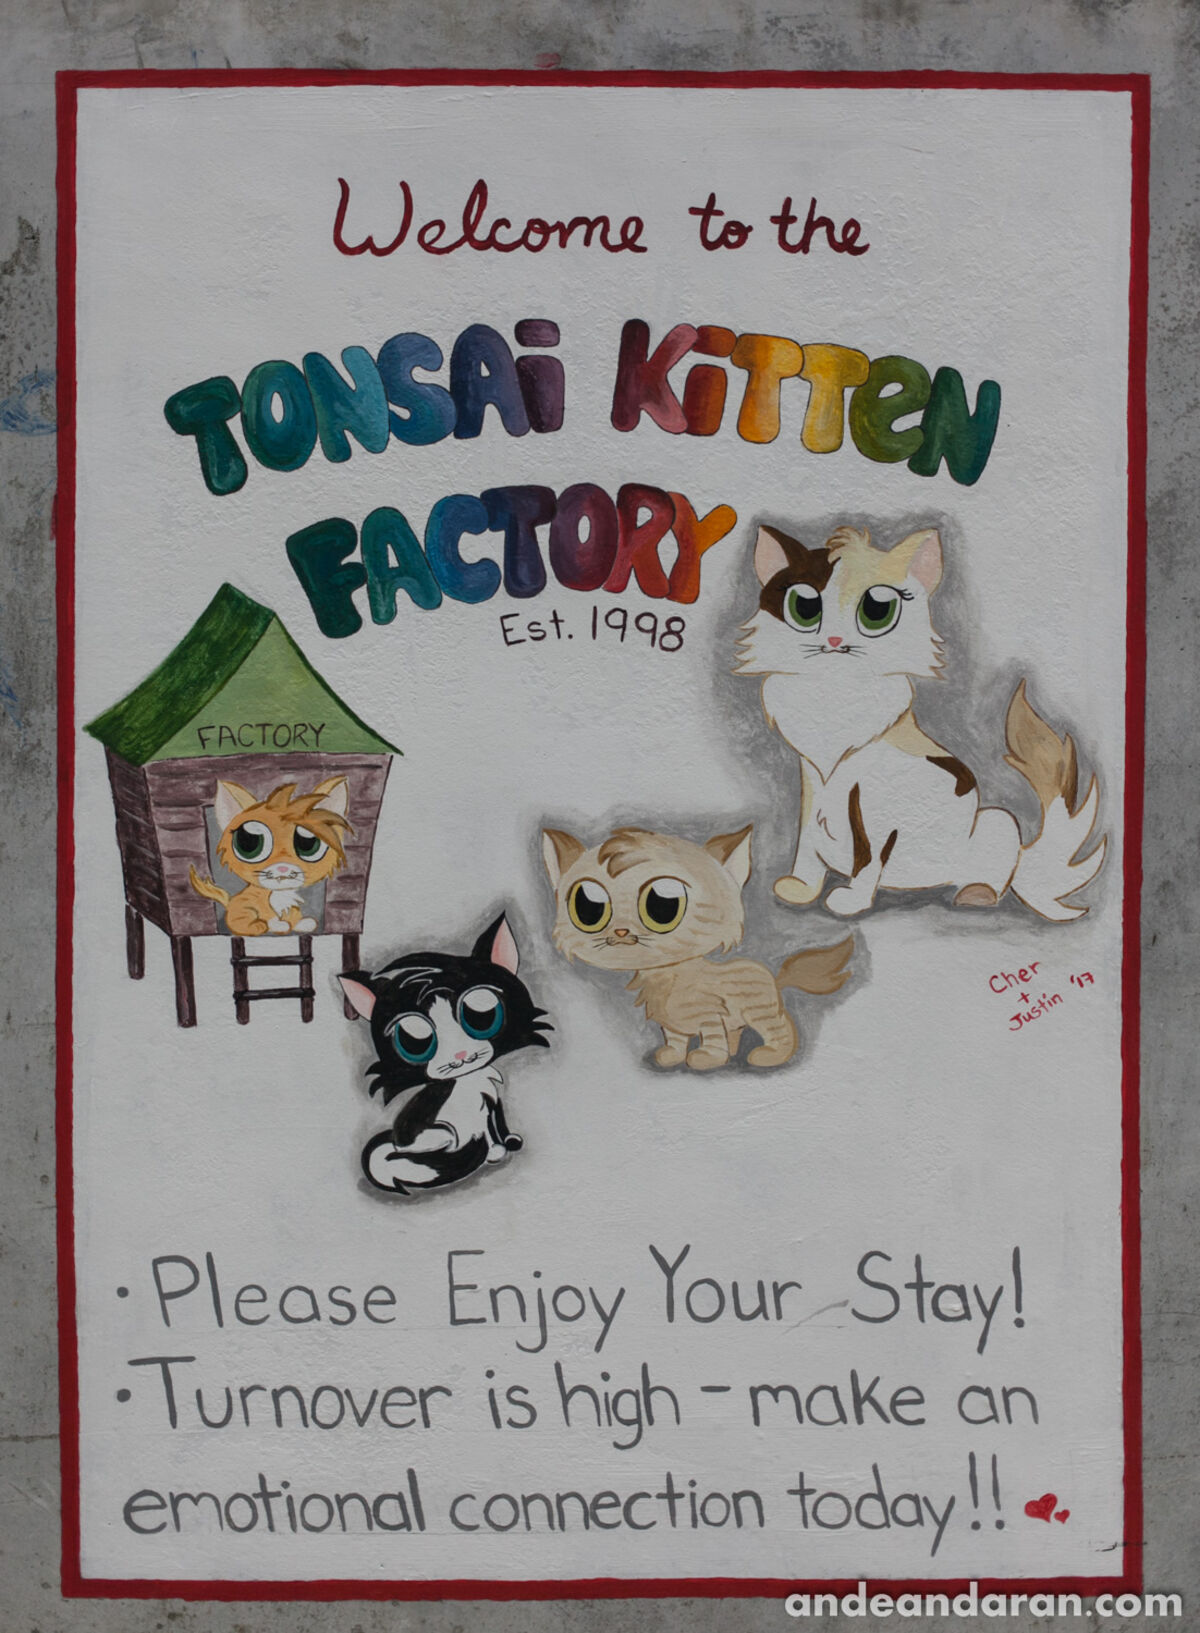 "Bienvenido a la fábrica de gatitos de Tonsai"